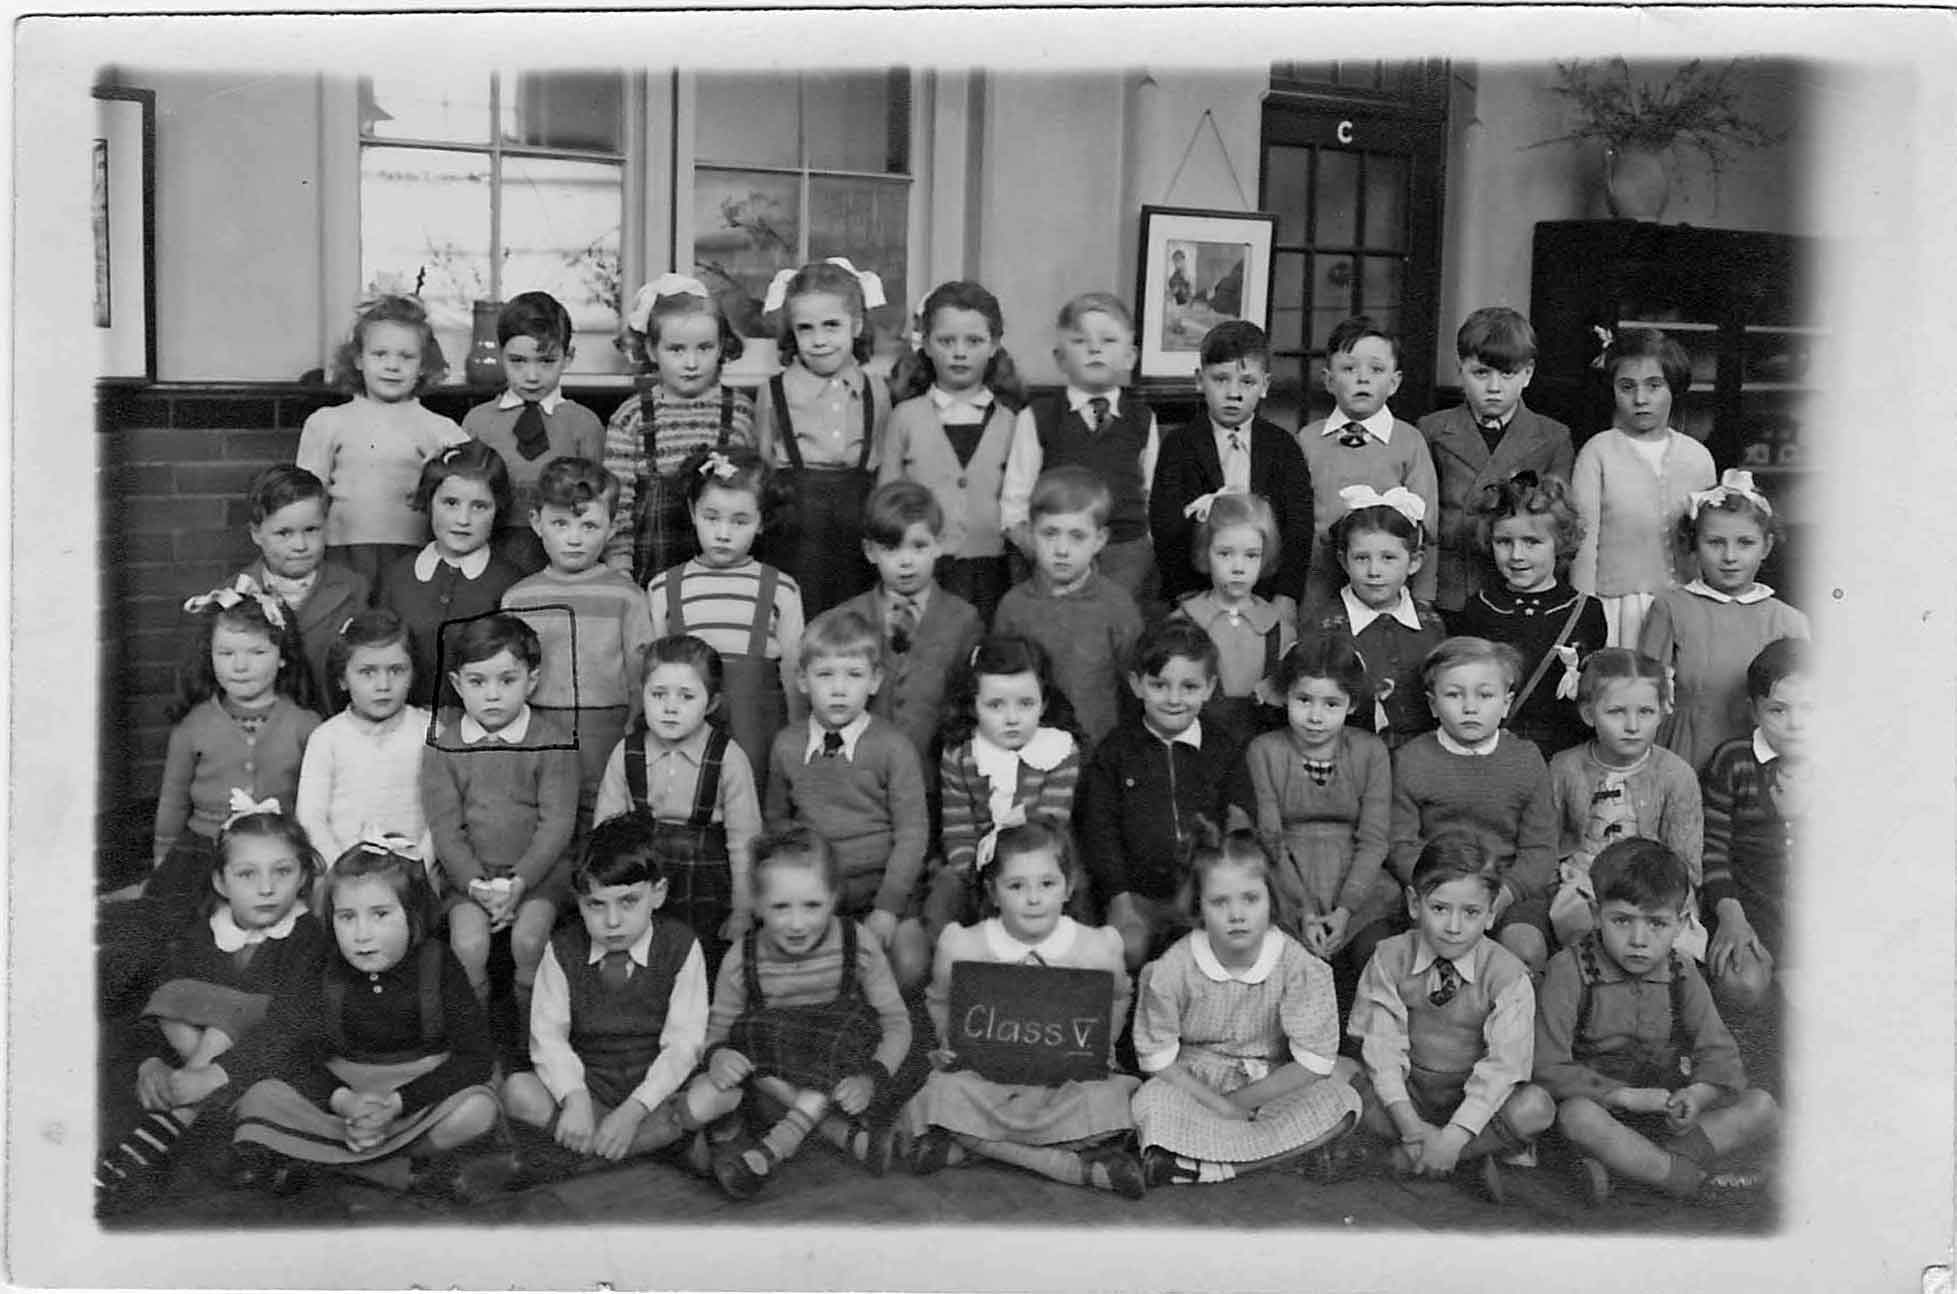 Winns Avenue School, Walthamstow - 1952